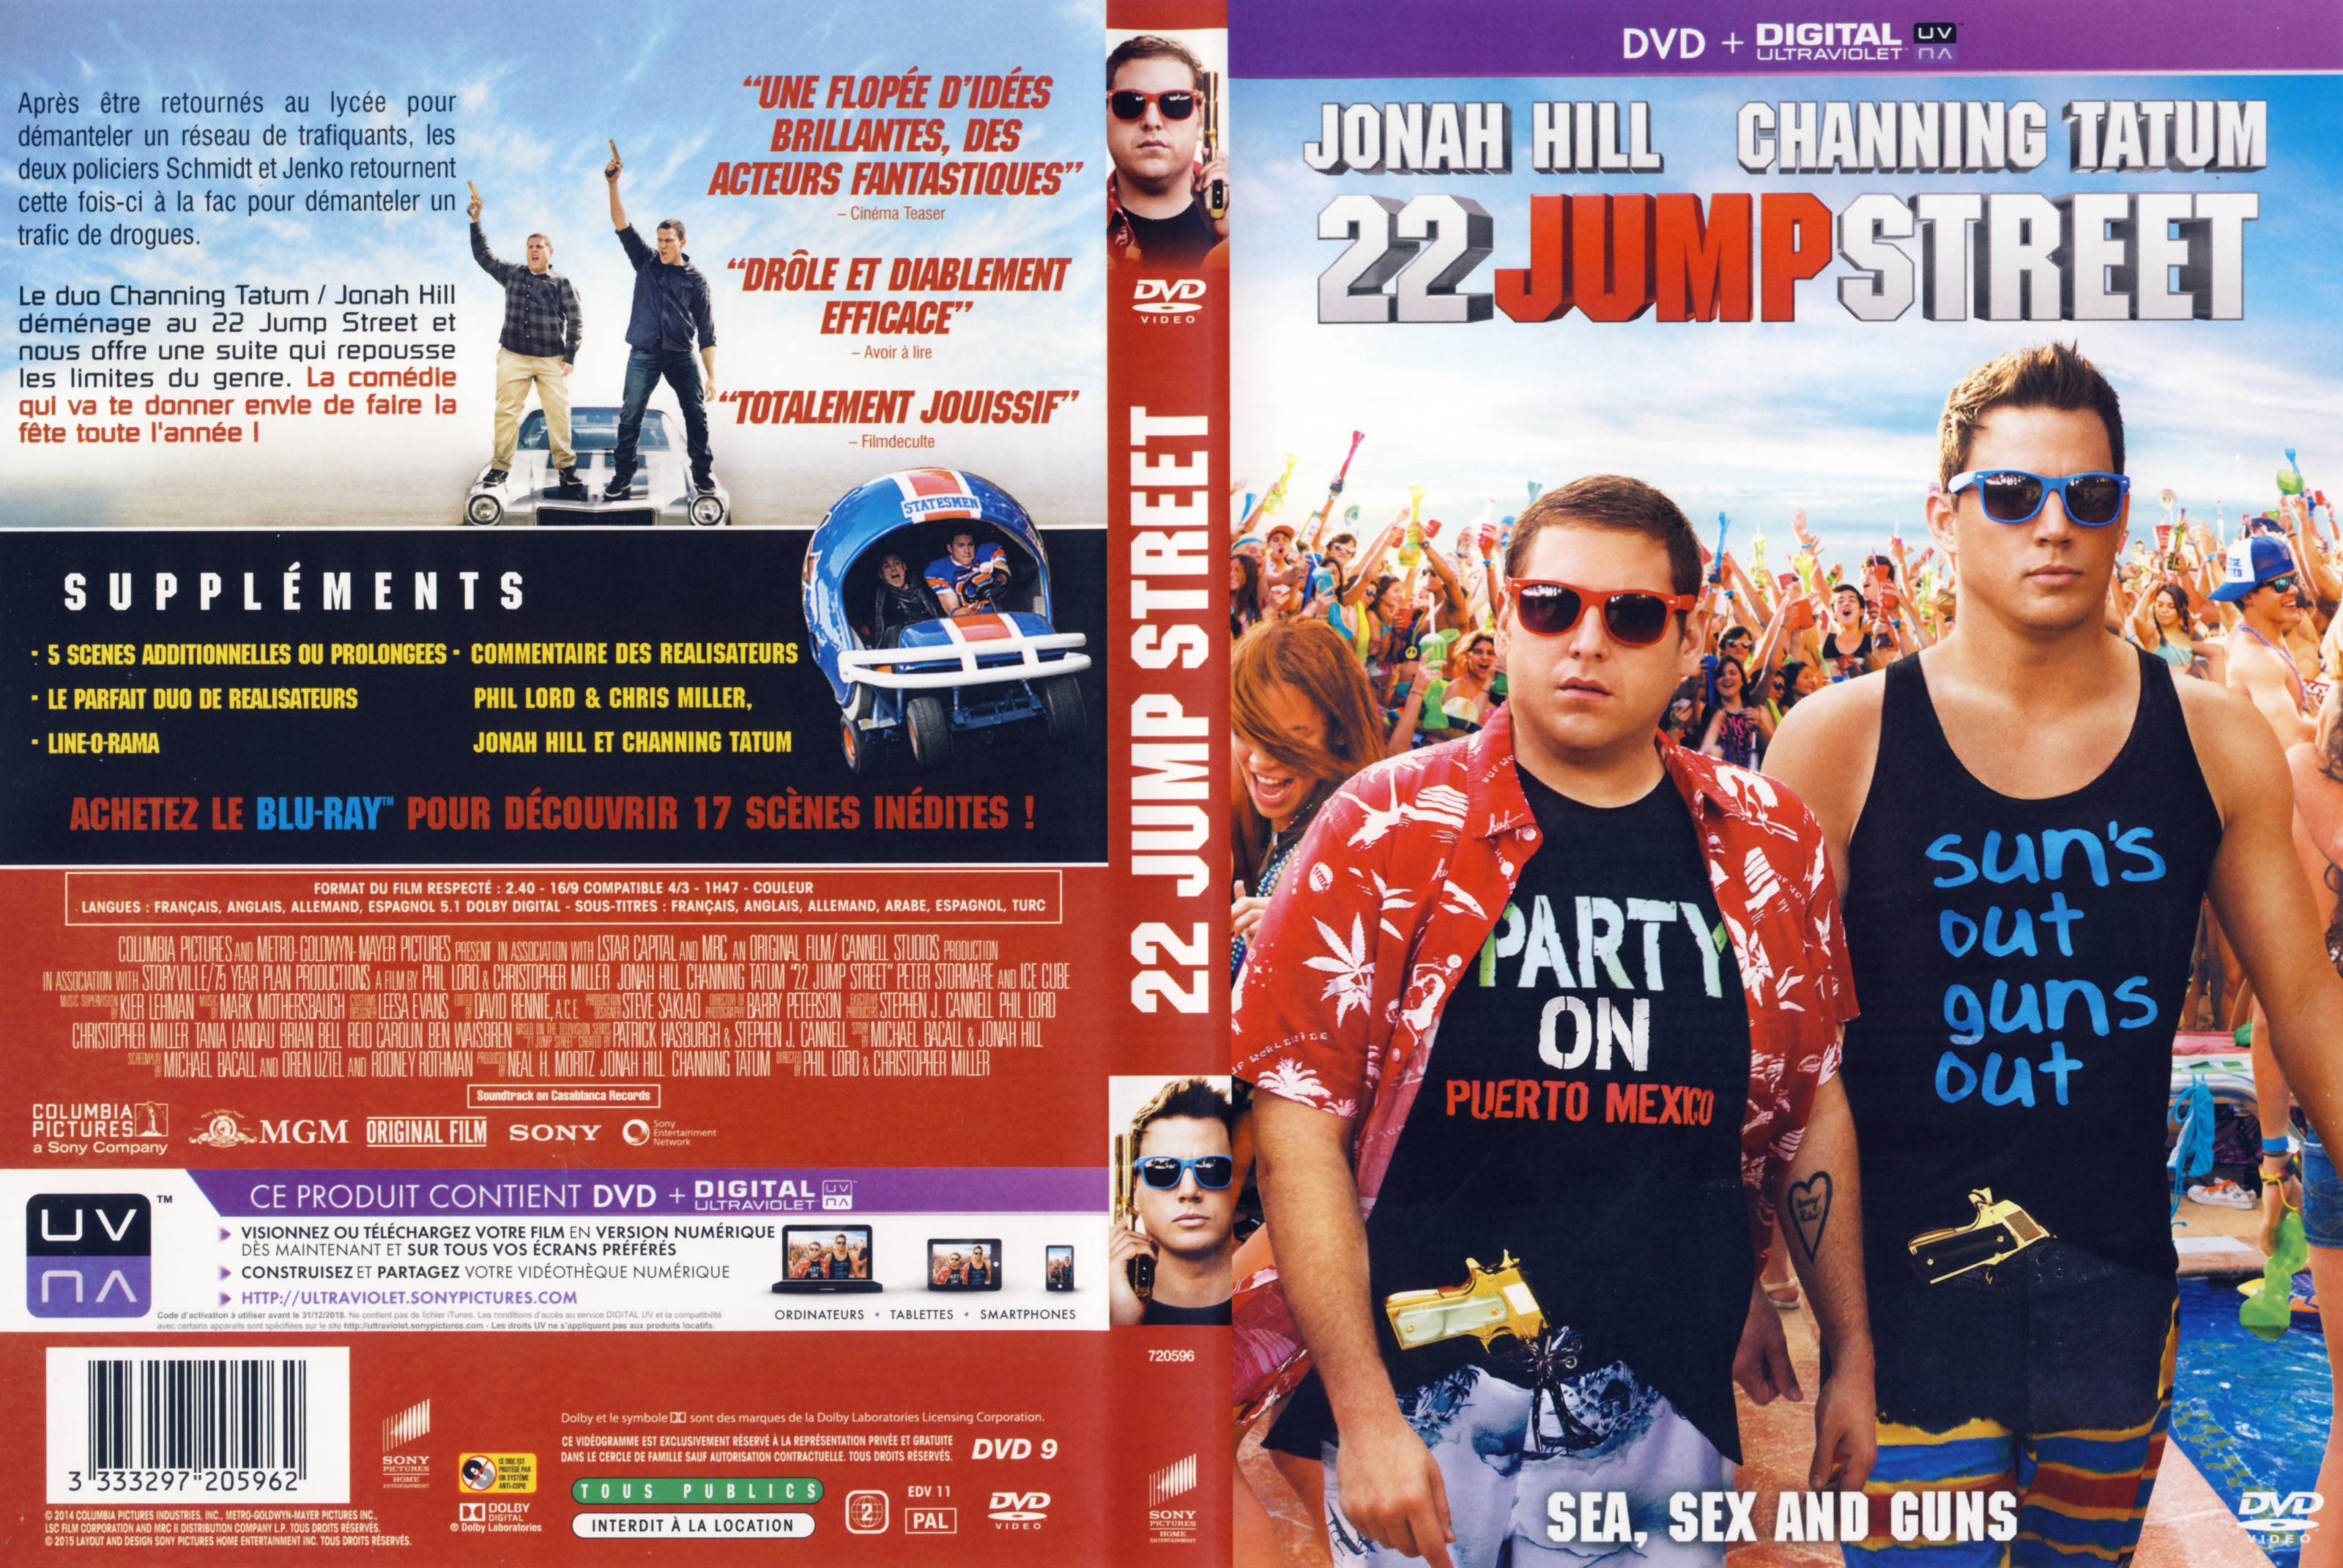 Jaquette DVD 22 Jump Street